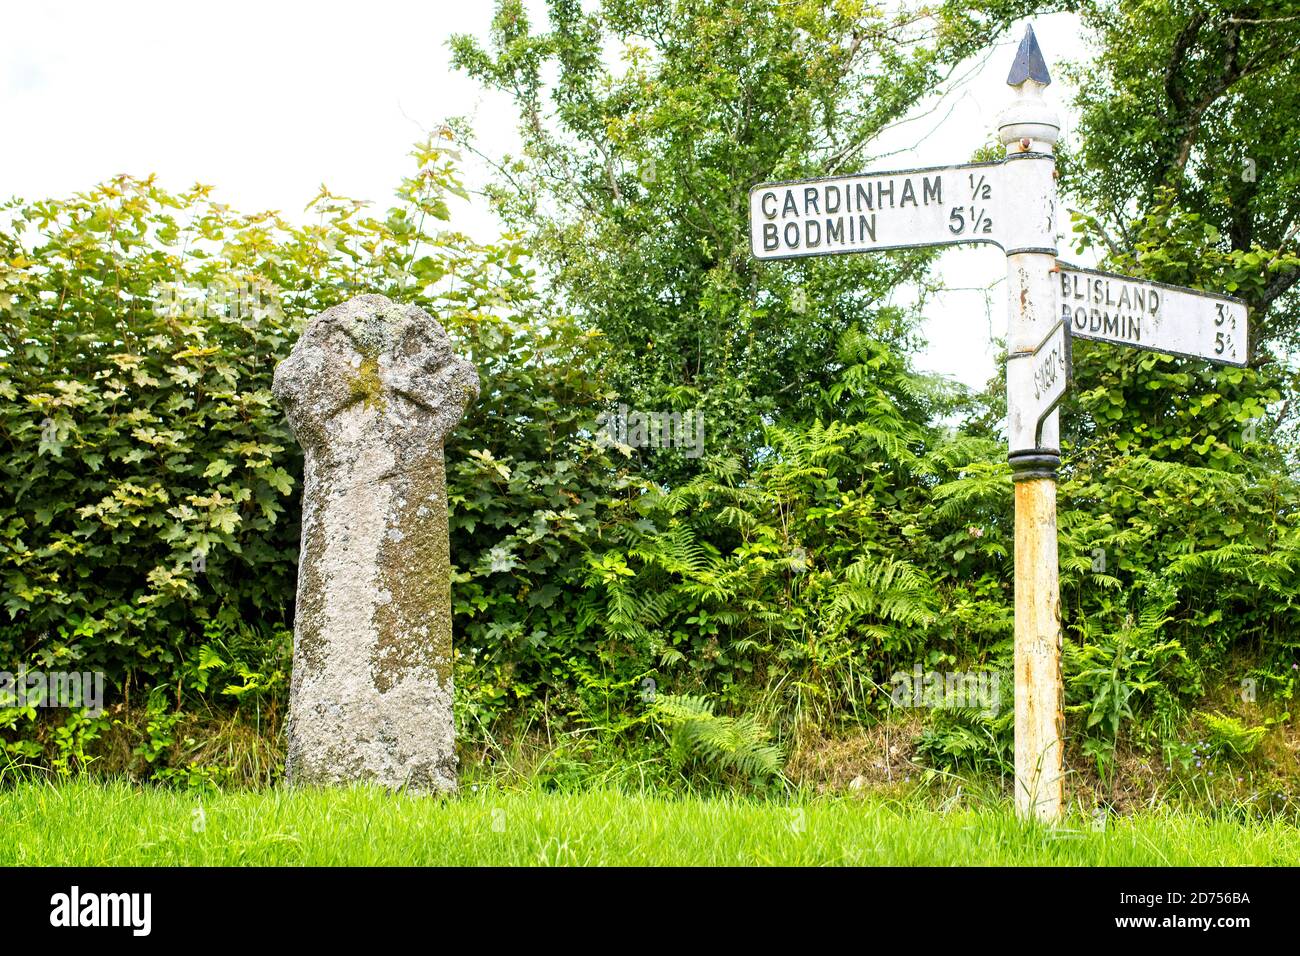 Antica croce di pietra e un vecchio cartello stradale 'fingerpost' ad un incrocio stradale vicino a Bodmin, Cornovaglia, Inghilterra, Regno Unito. Foto Stock